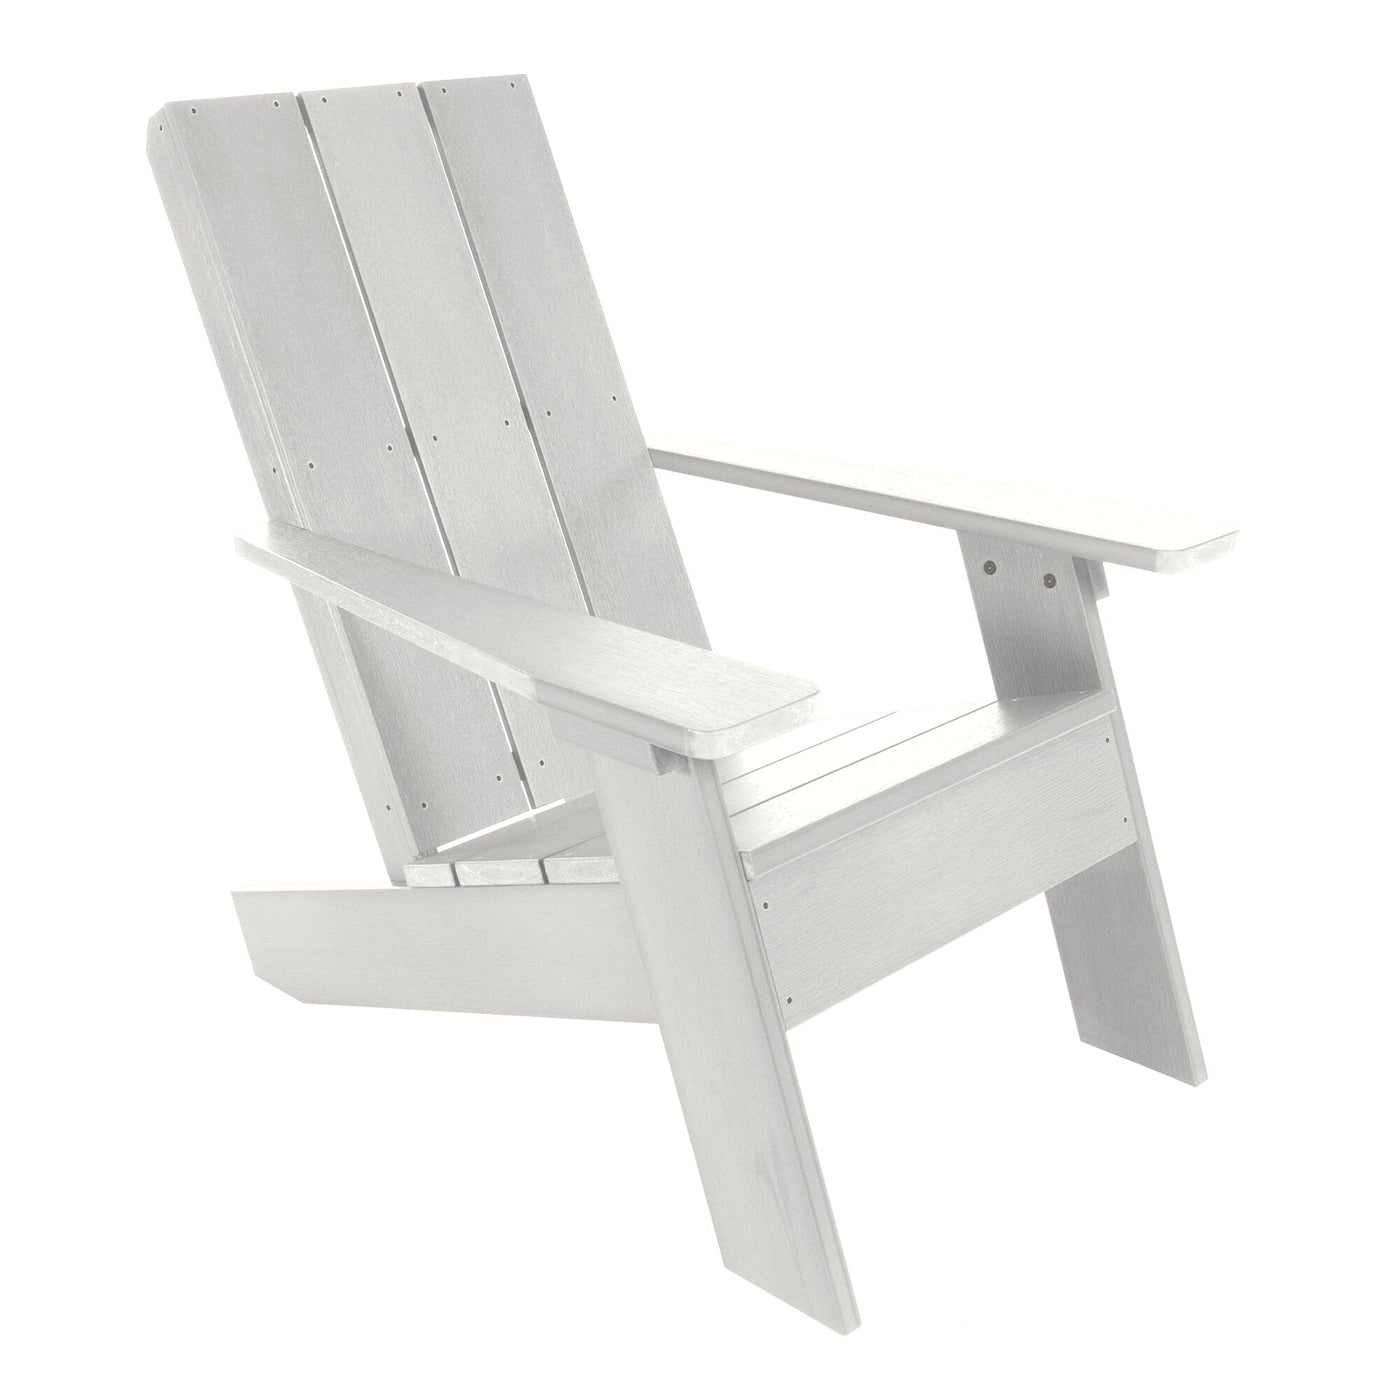 Italica Modern Adirondack Chair Adirondack Chairs Highwood USA White 